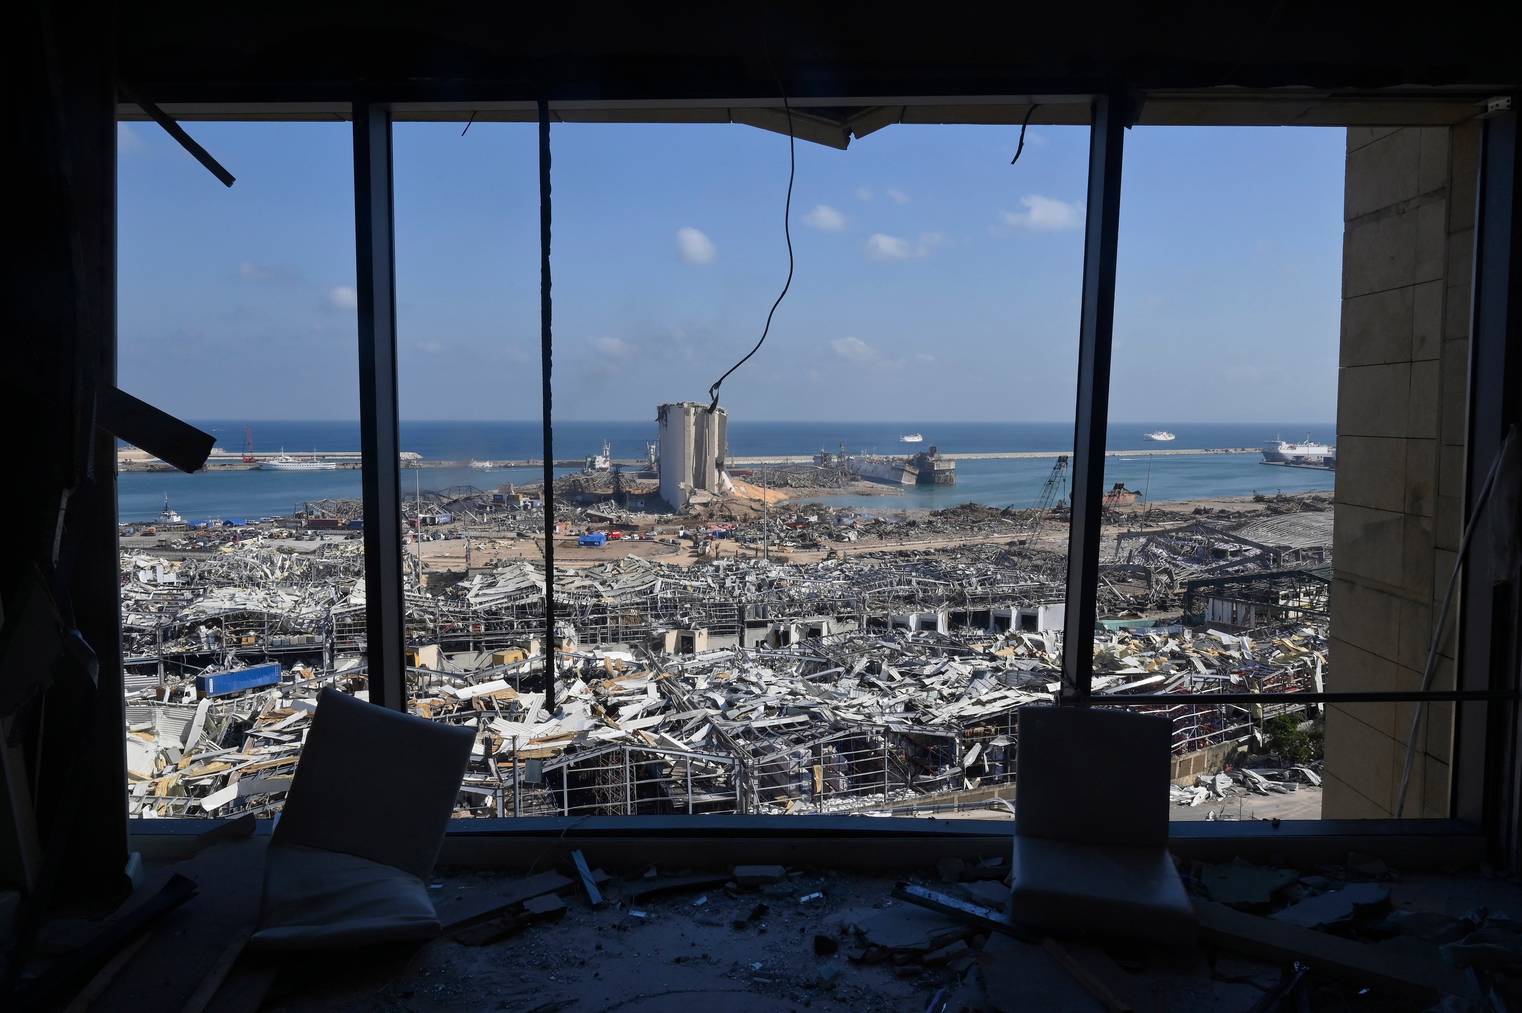 Ganze Quartiere wurden durch die Explosion am Hafen von Beirut zerstört.